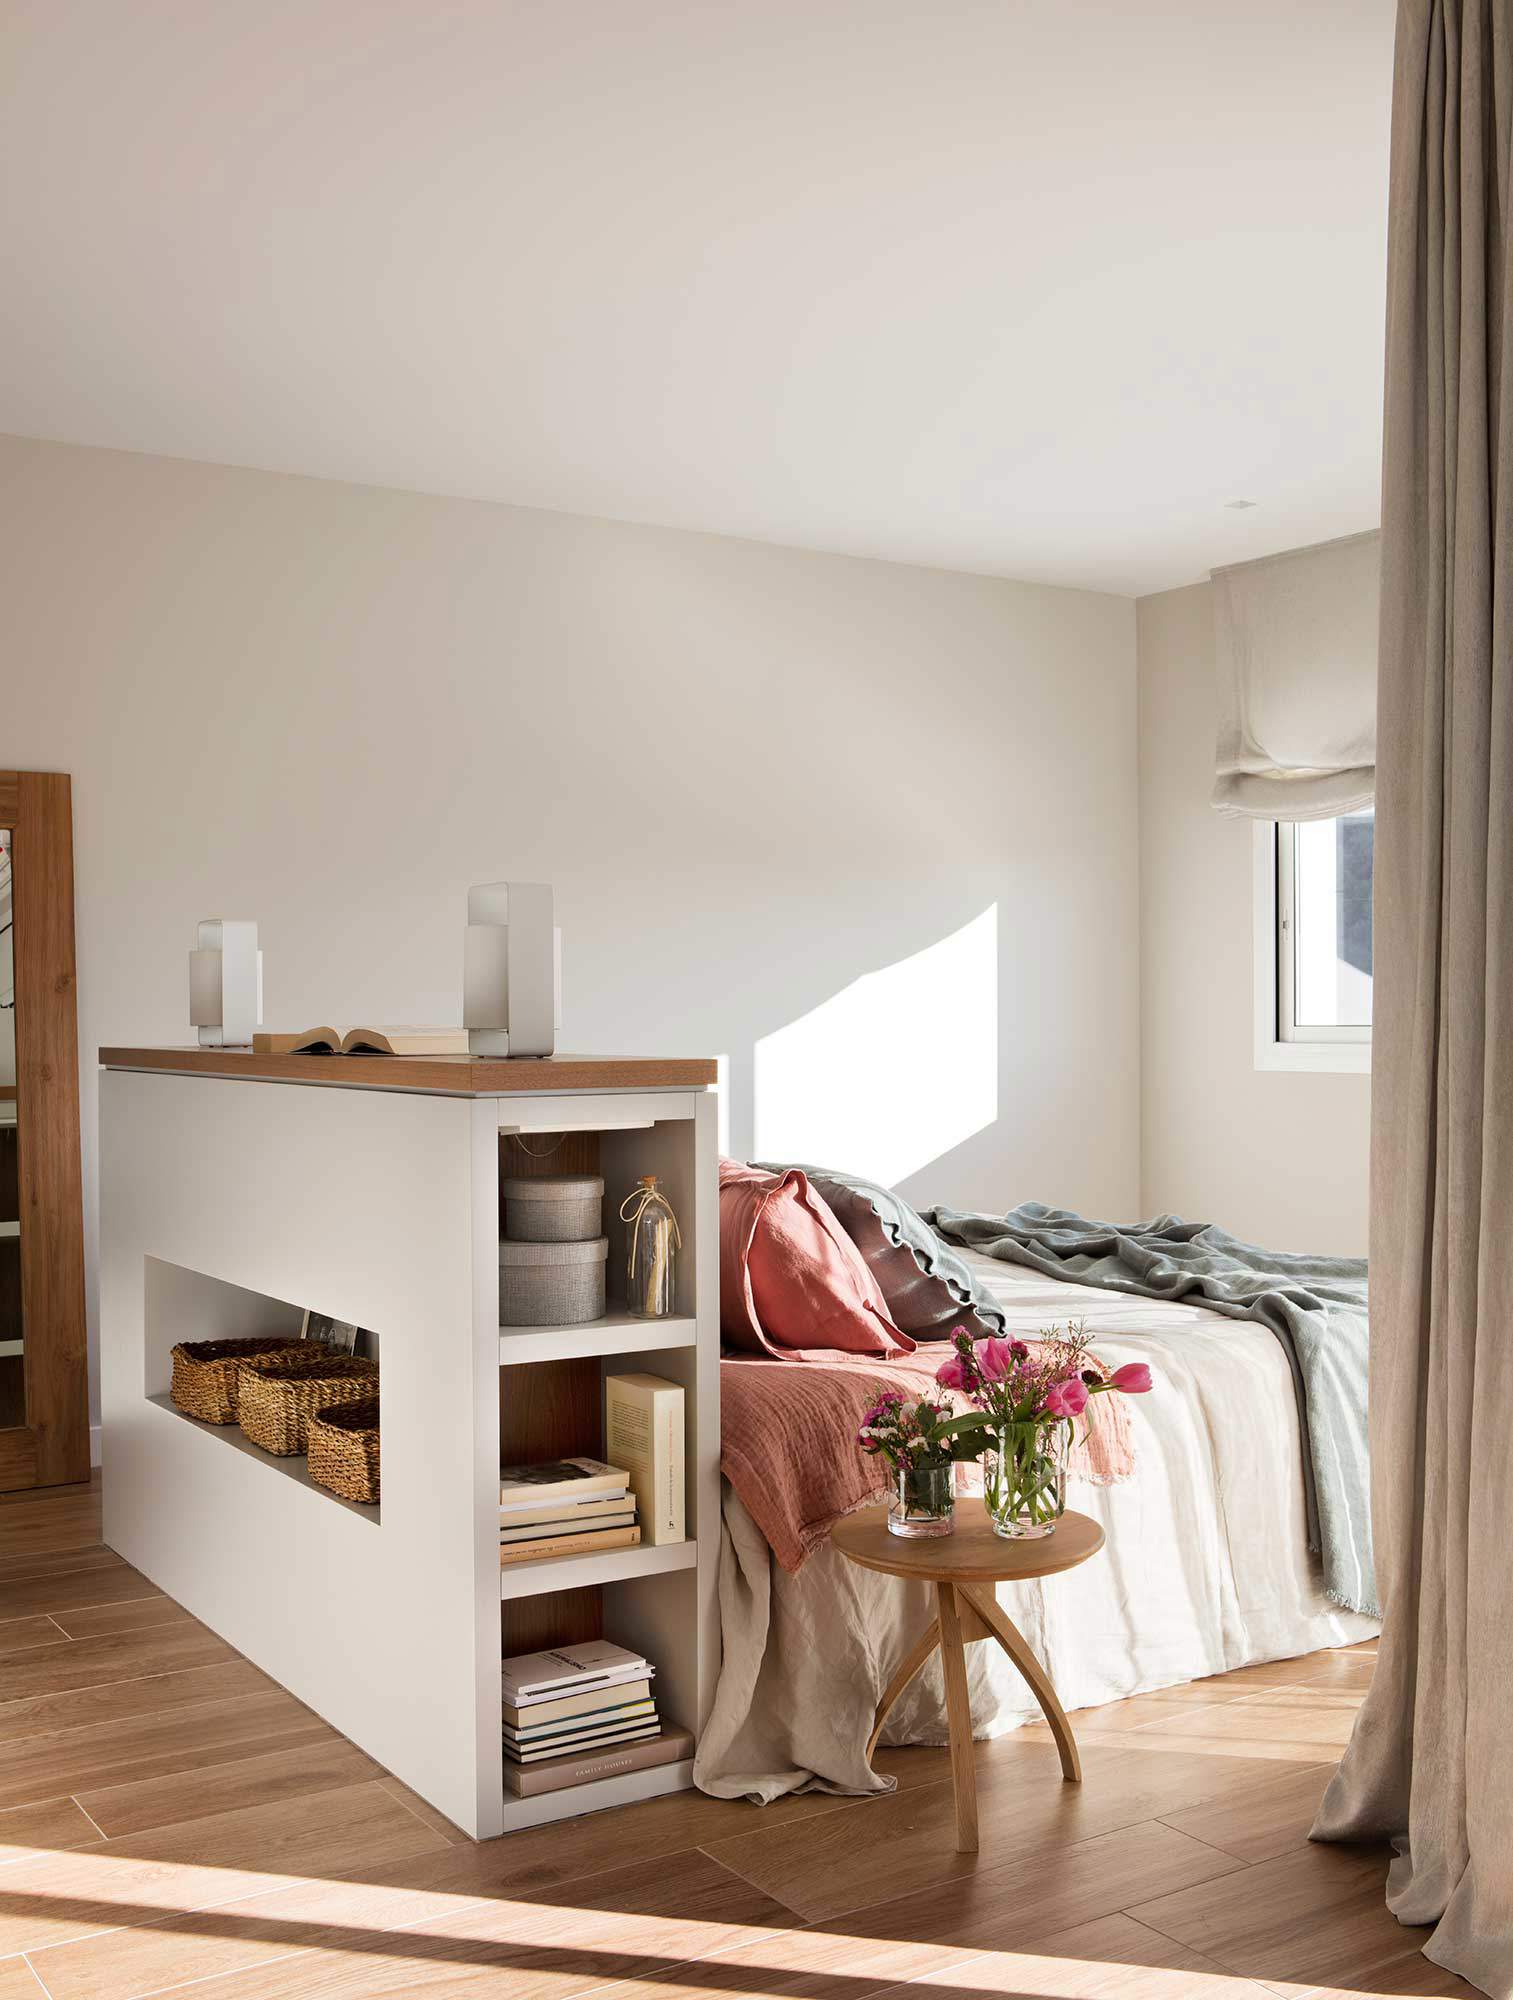 Dormitorio con hornacinas en el cabecero de obra, diseño de Pia Capdevila.